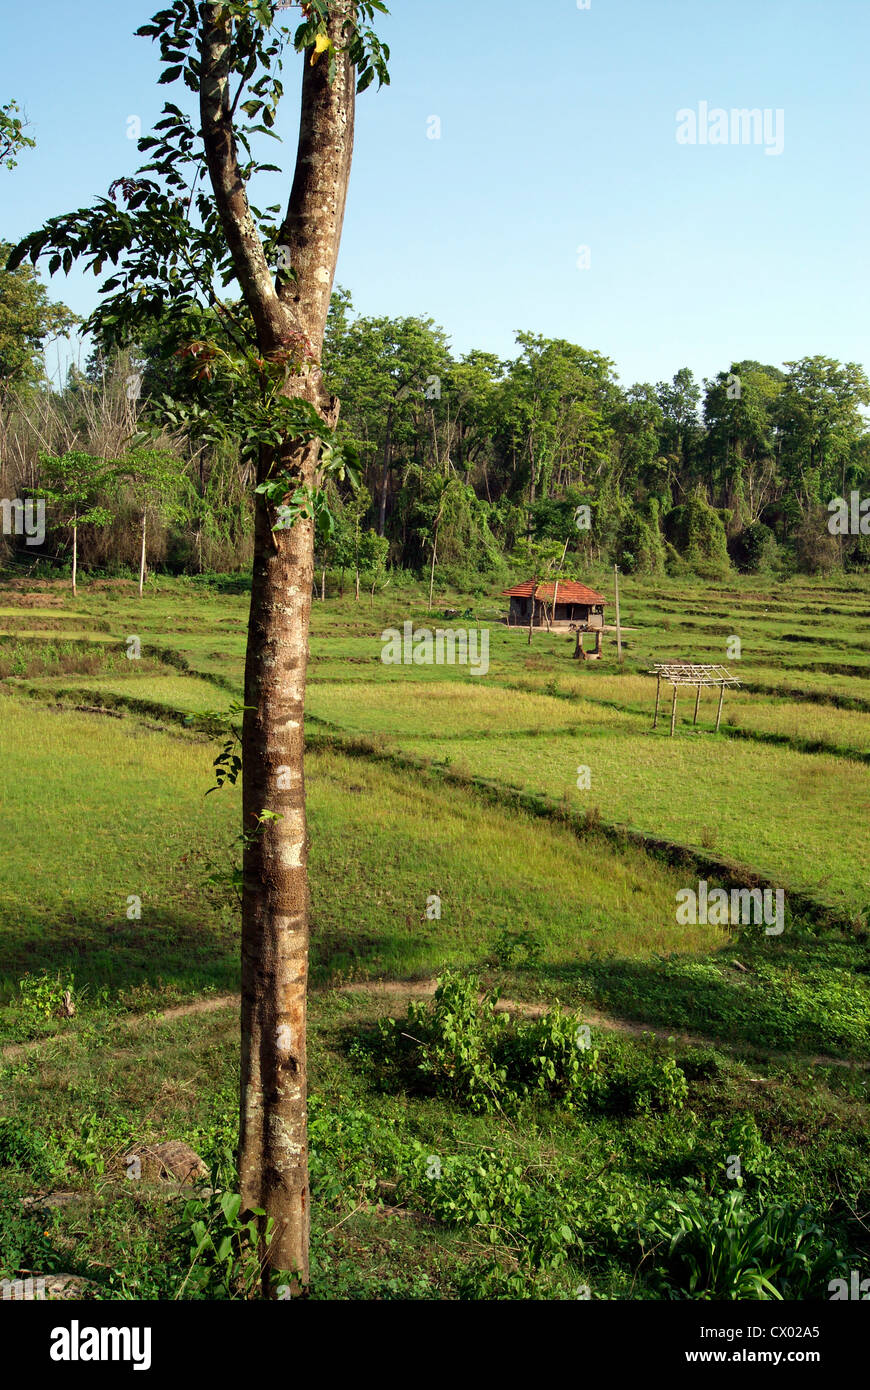 La risaia Campo e nativi di capanne tribali nei pressi di Wayanad Area forestale in Kerala India Foto Stock